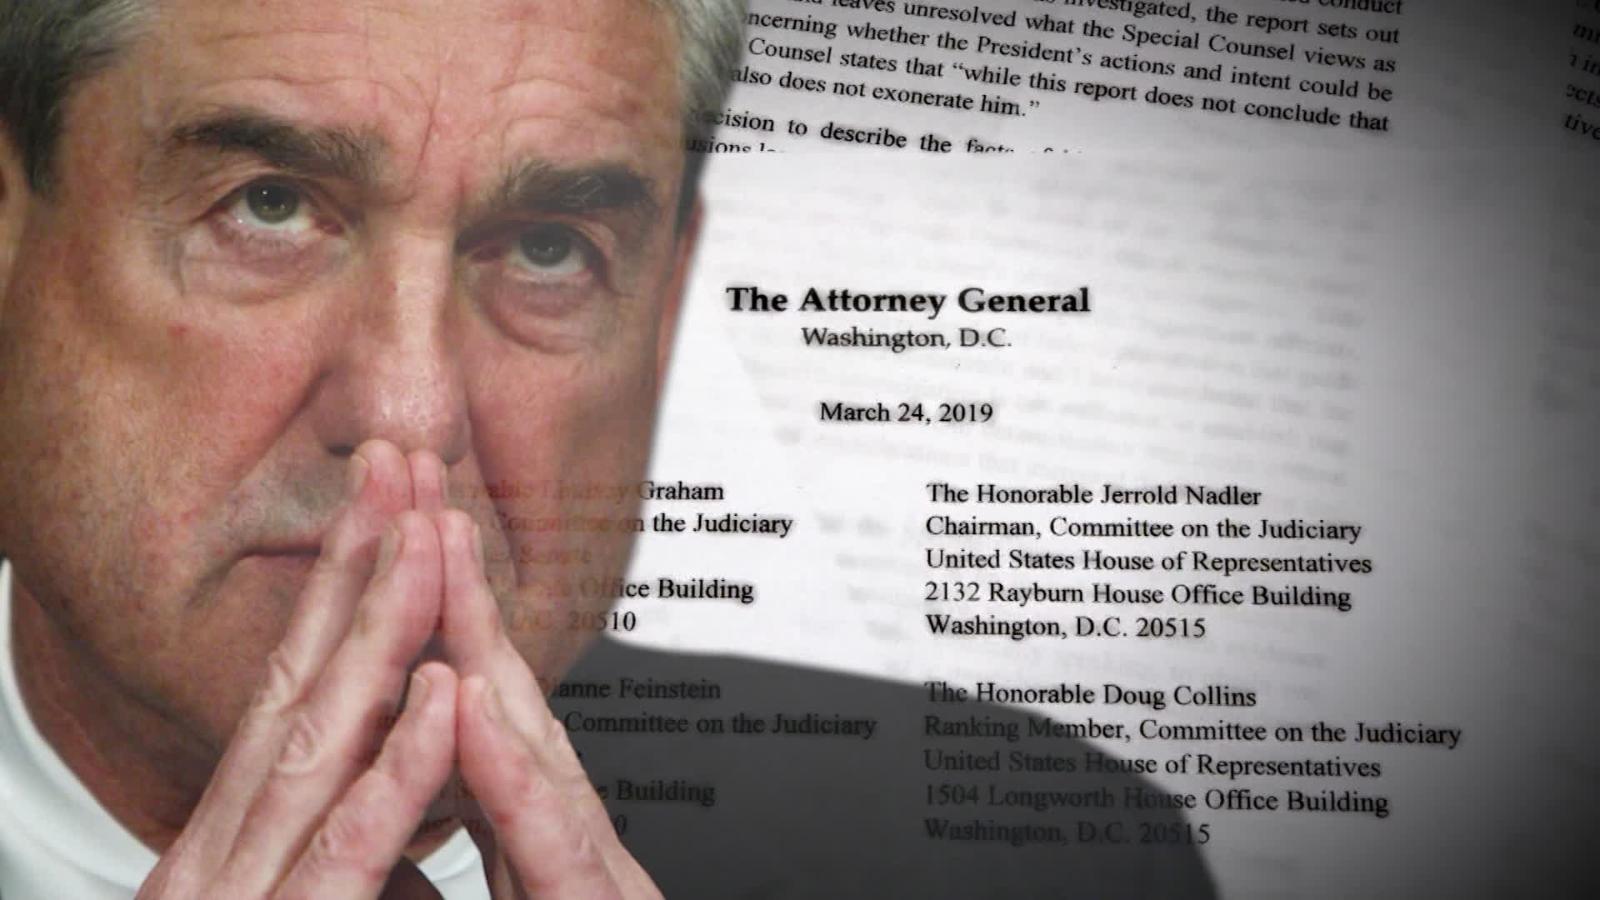 Comisión del Congreso pide el informe de Mueller completo